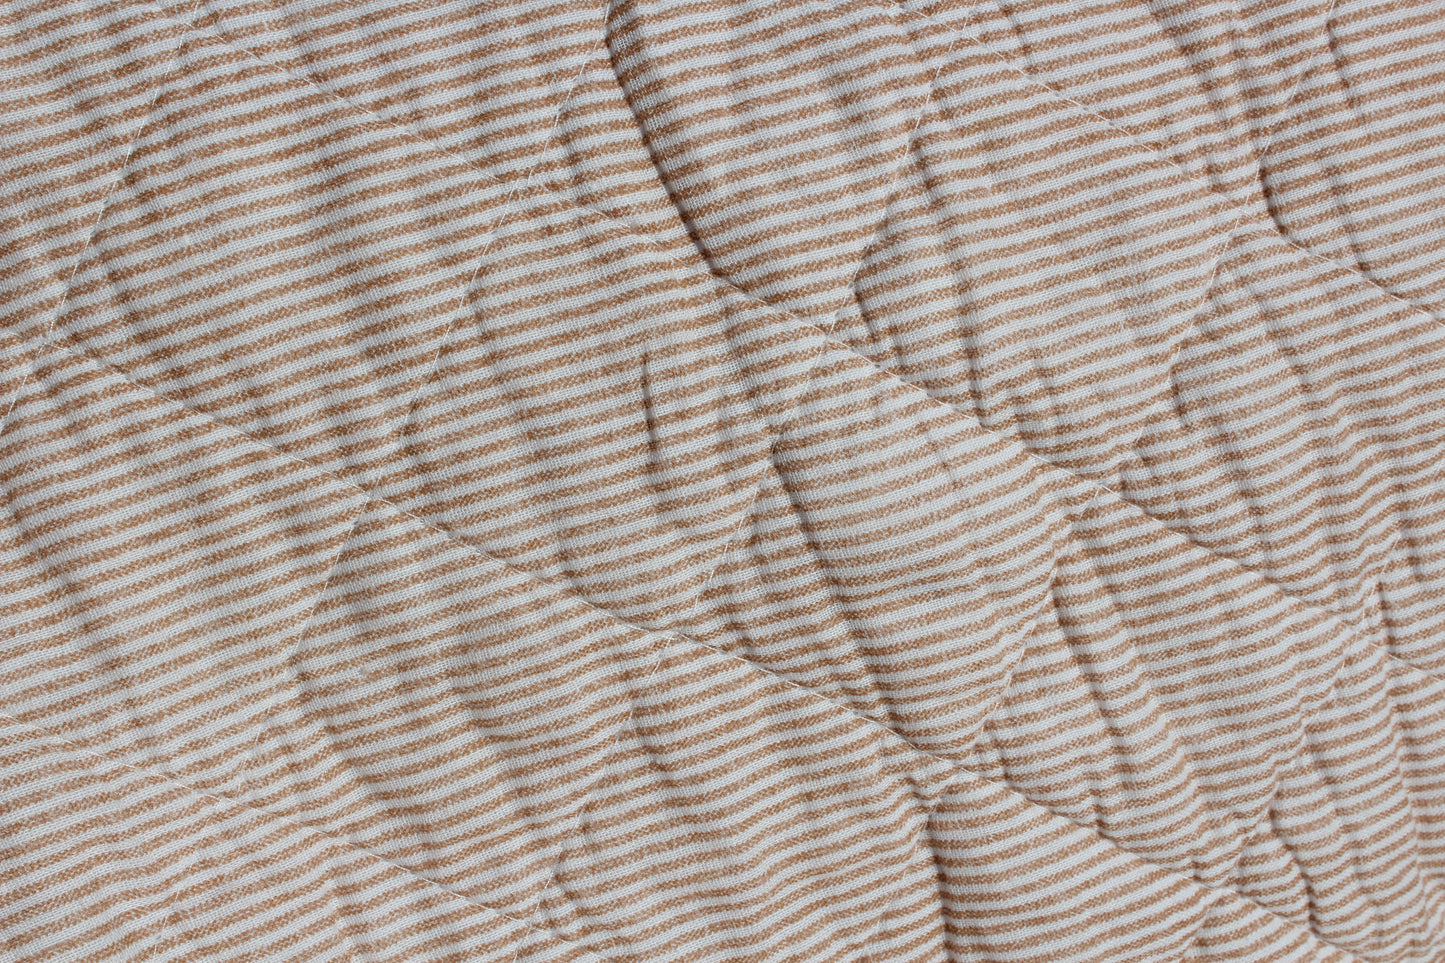 Ib Laursen -Quilt vattæppe - hvide og coral sand striber